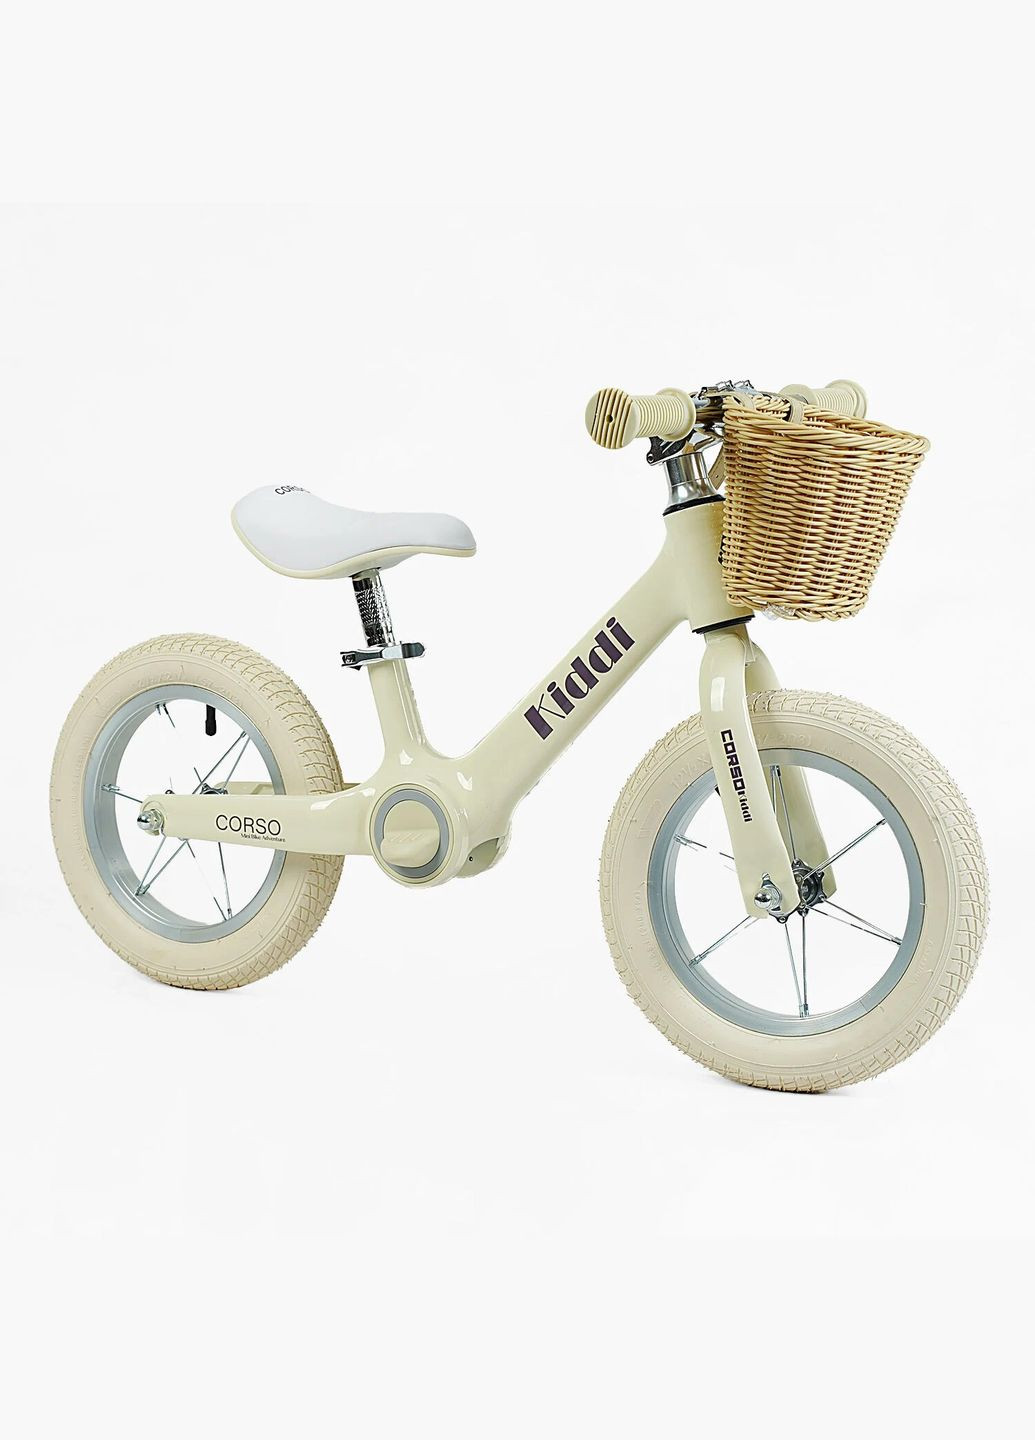 Дитячий велобіг KIDDI ML-12102. Магнієва рама, надувні колеса 12", підставка для ніг, кошик Corso (290254806)